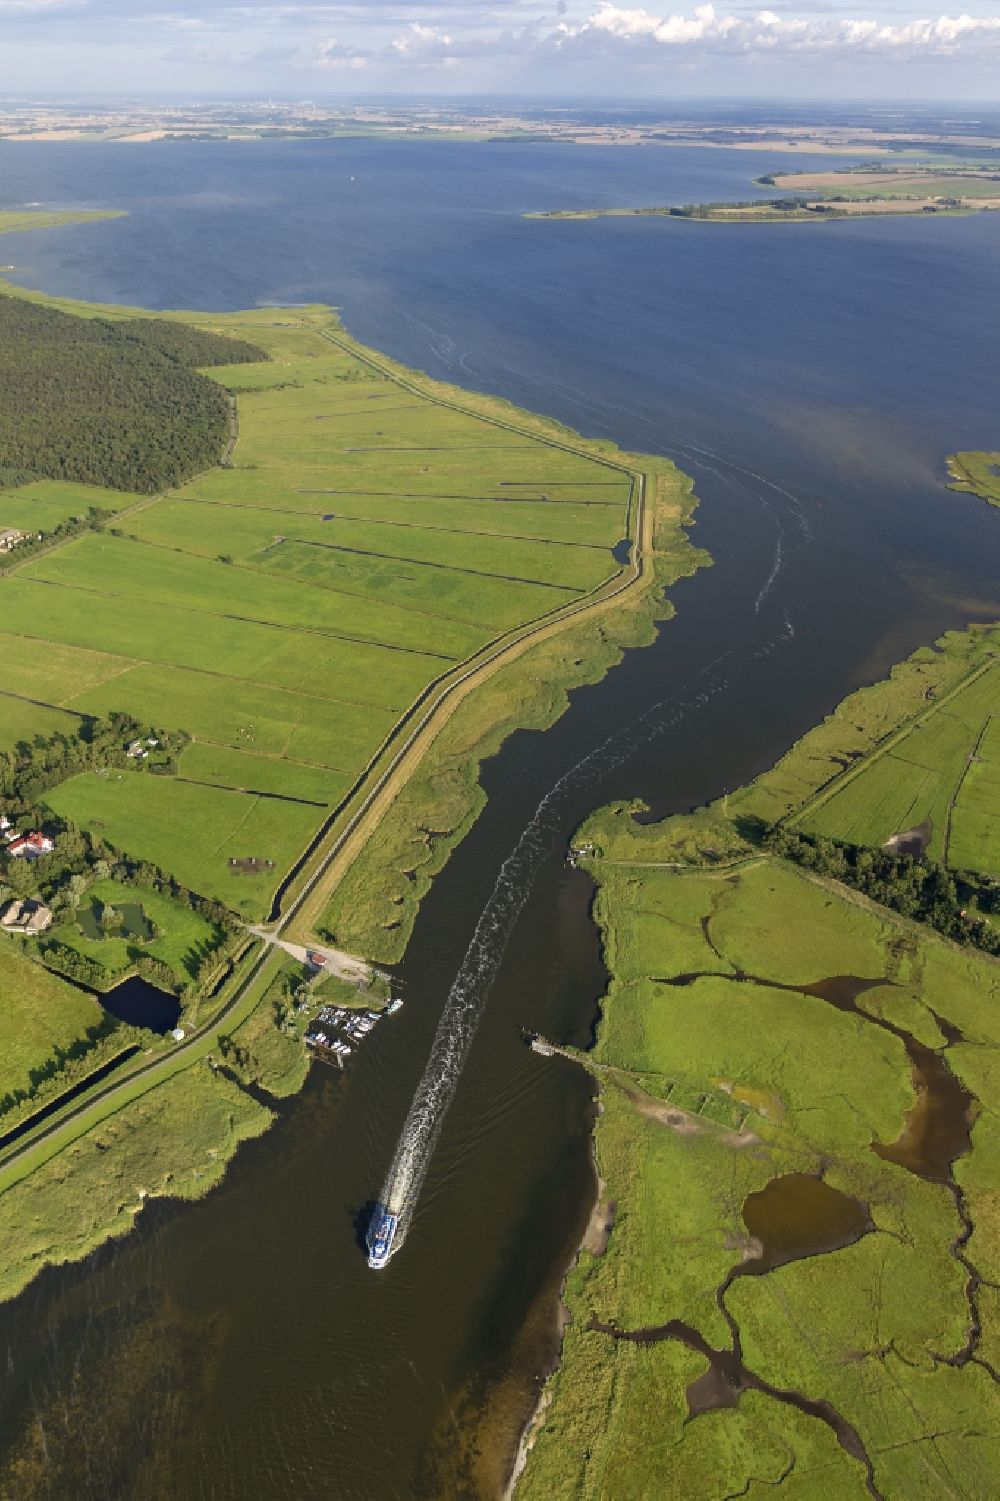 Luftbild Zingst - Landschaft des Barther Bodden mit der Insel Großer Kirr bei Zingst im Bundesland Mecklenburg-Vorpommern